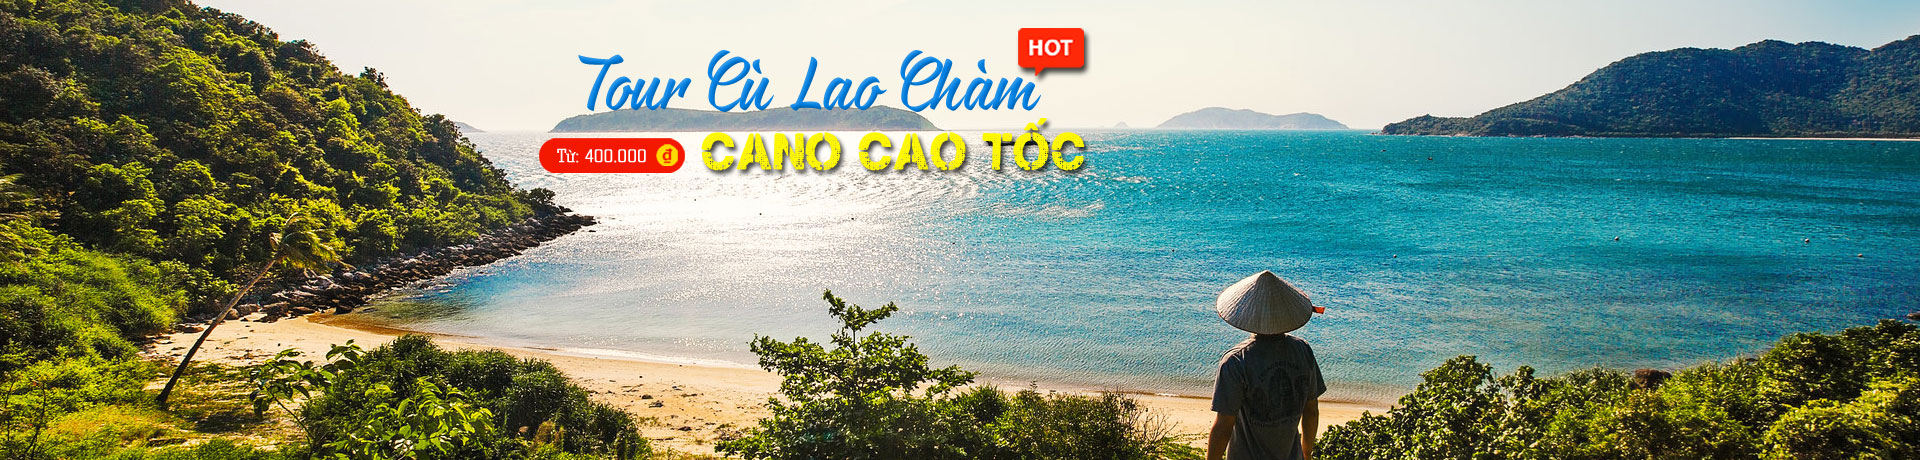 Tour Cù Lao Chàm Cano